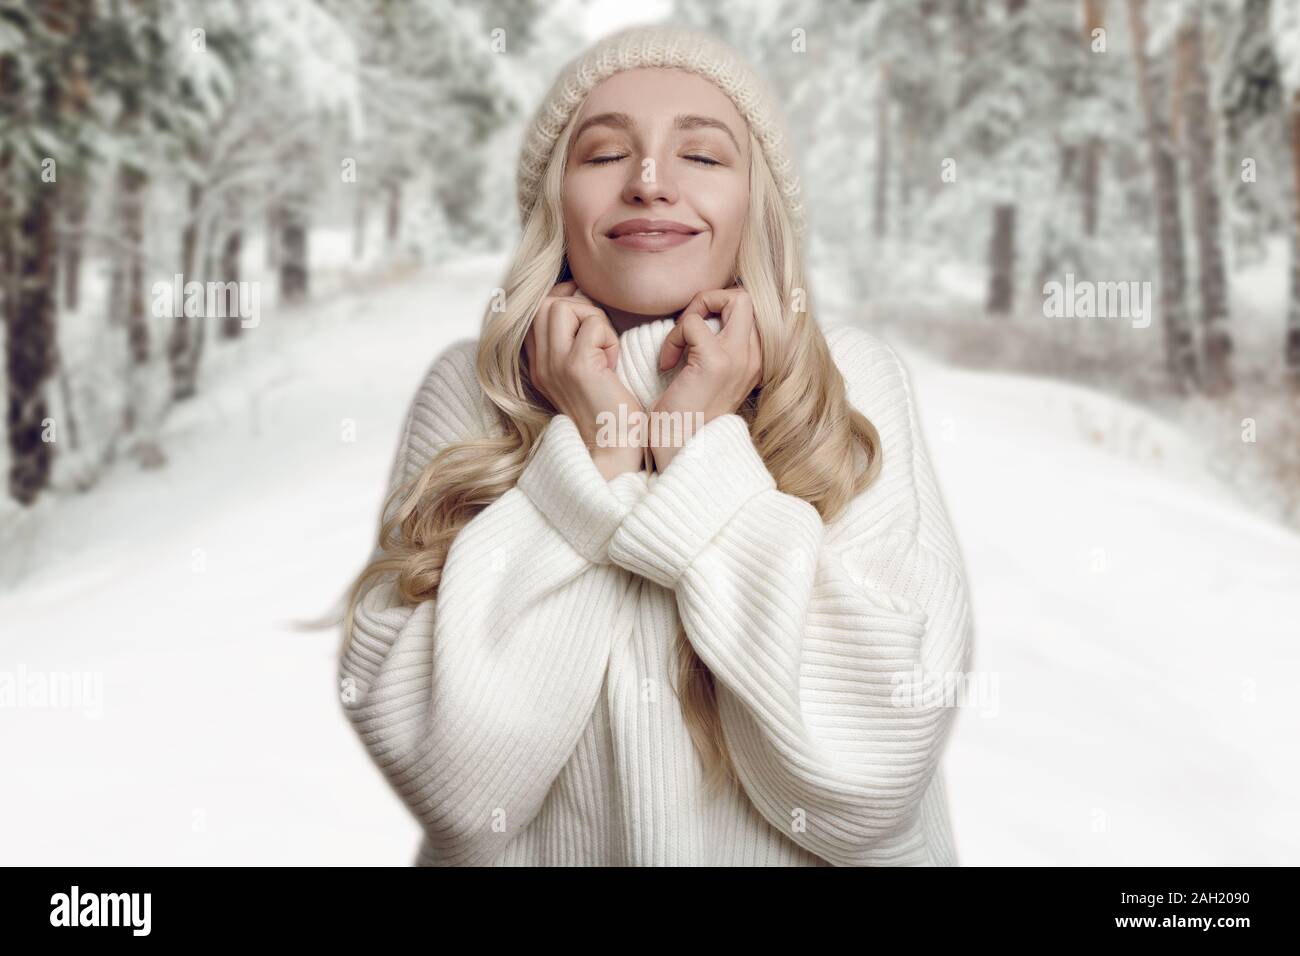 Junge blonde Frau, die ihre weißen Strickpullover genießen, gegen Winter wald landschaft Hintergrund stehend, mit den Händen an den Hals und mit dem Lächeln Stockfoto